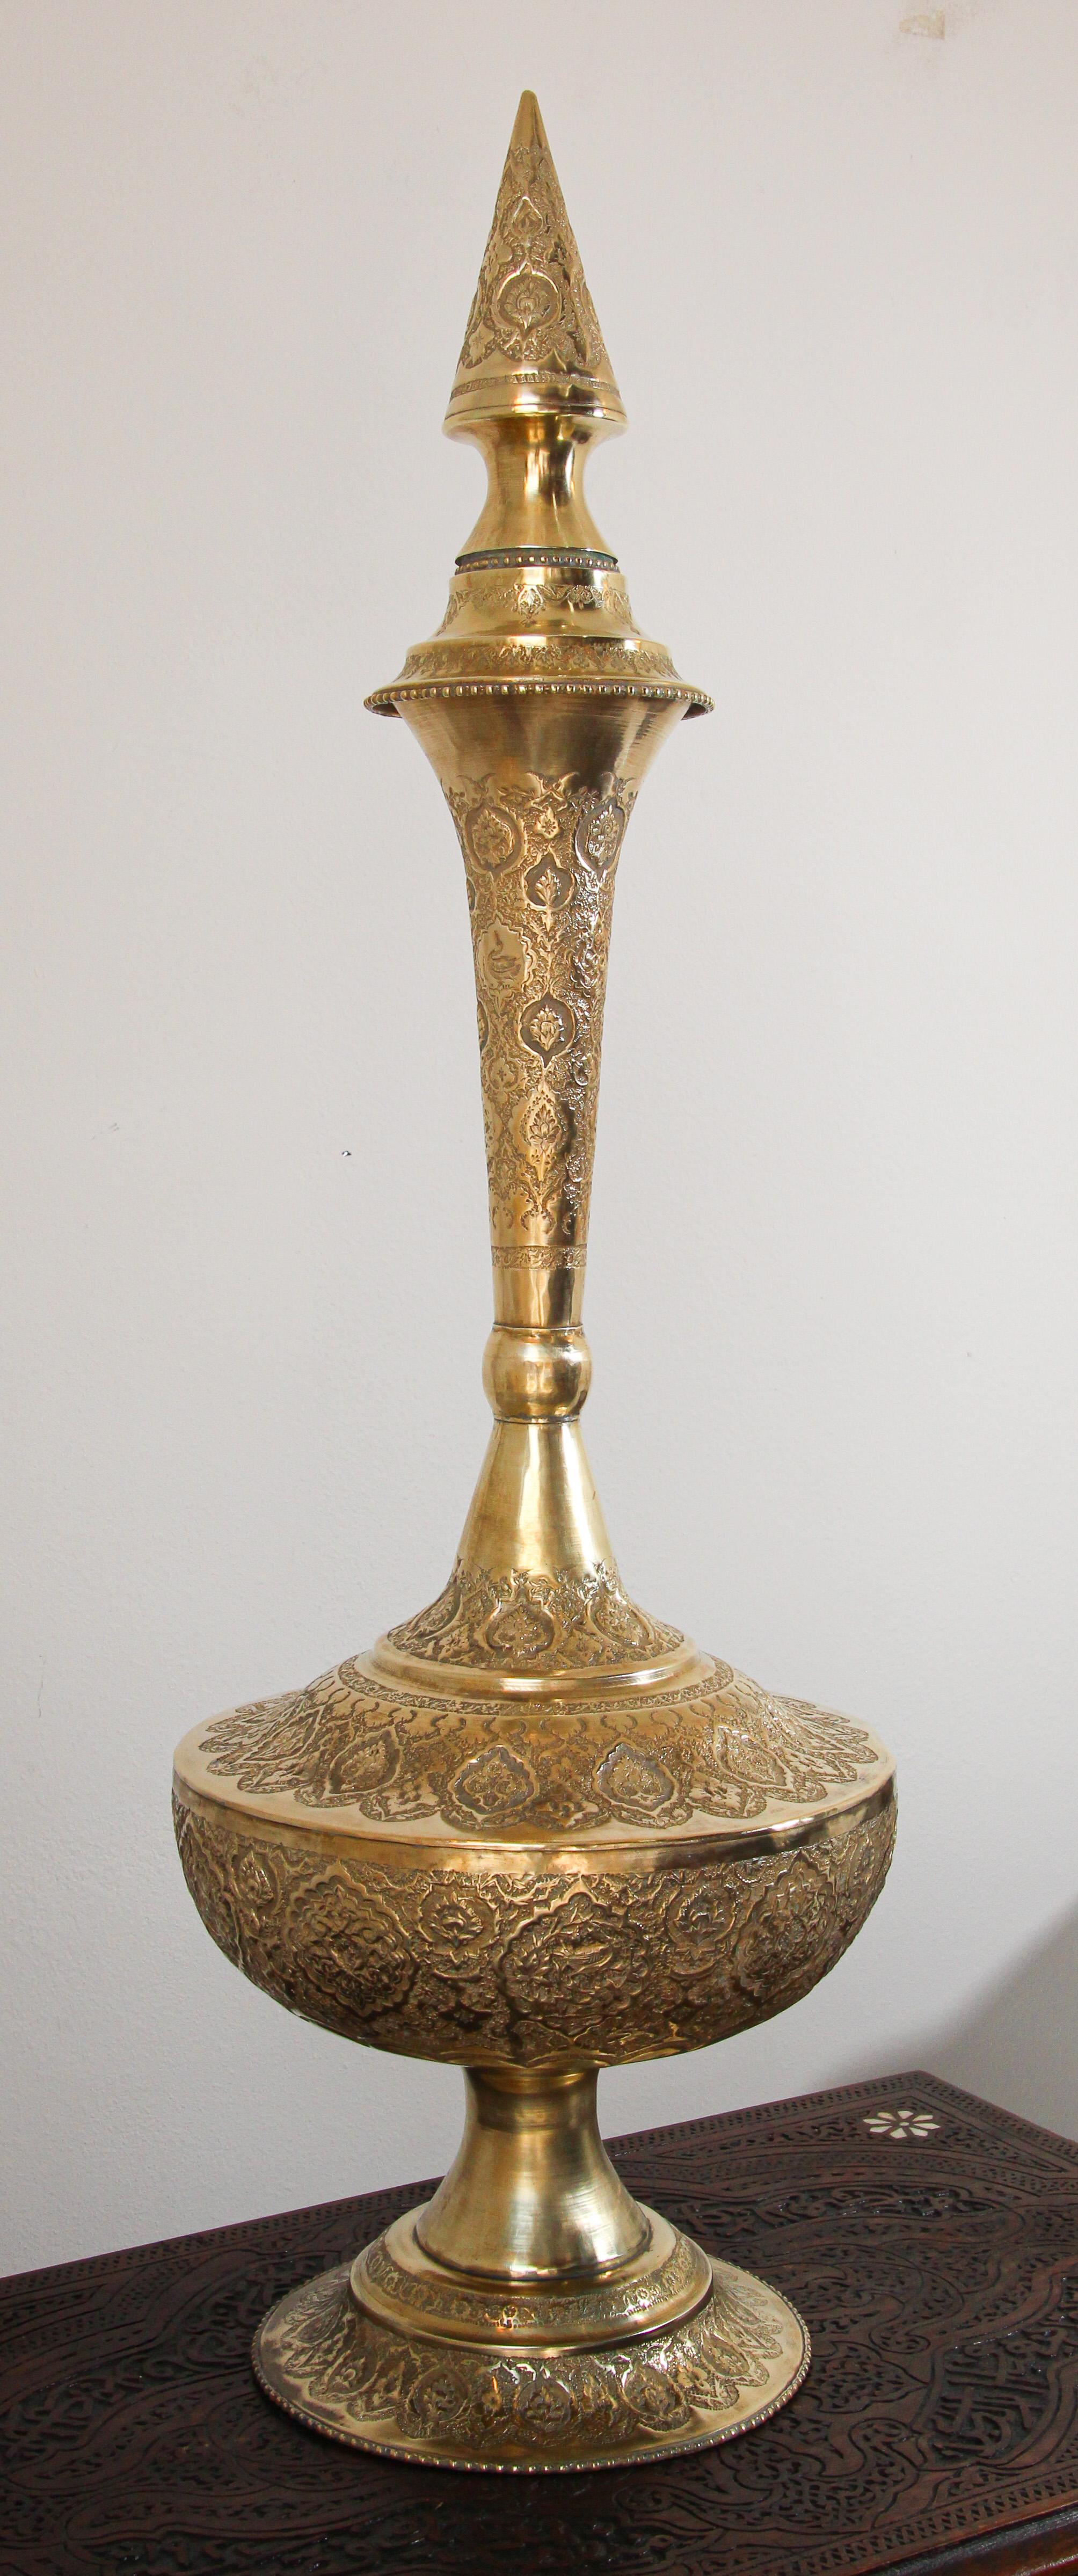 Une urne à bouteille en laiton d'Inde moghole surdimensionnée de la fin du 19e siècle.
Un récipient en laiton, élégant, au col cannelé, avec bouchon. 
Lucknow vers 1860 Période Raj, de forme globulaire avec un haut col effilé avec des motifs